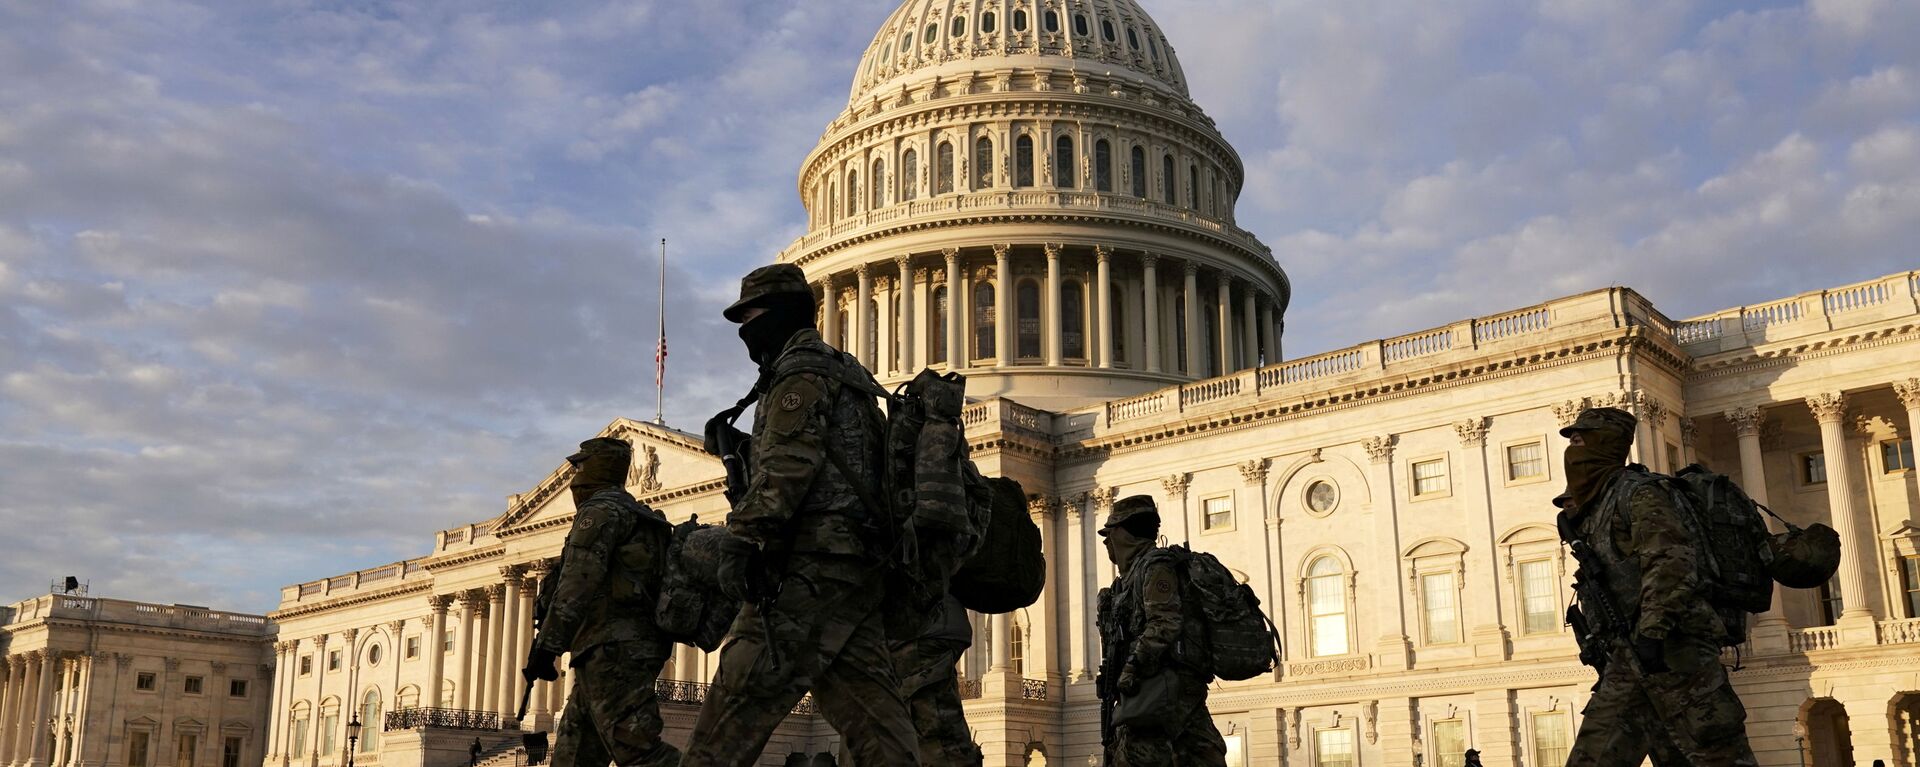 Военнослужащие Национальной гвардии США у здания Капитолия в Вашингтоне - Sputnik Узбекистан, 1920, 15.01.2021